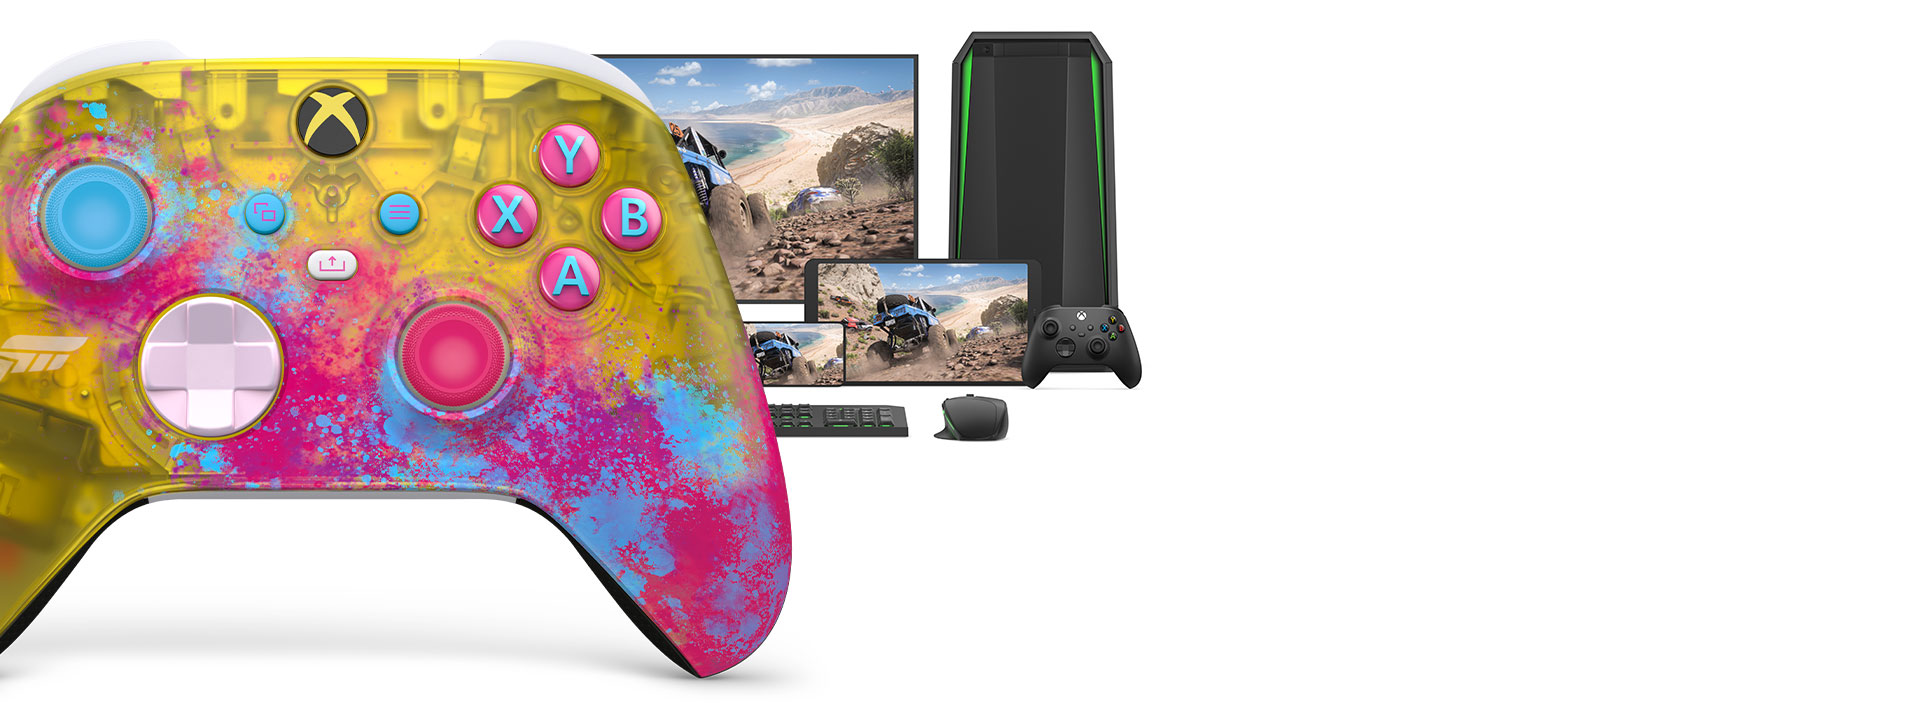 Trådløs Xbox-kontroller Forza Horizon 5 med datamaskin, TV og en Xbox Series S